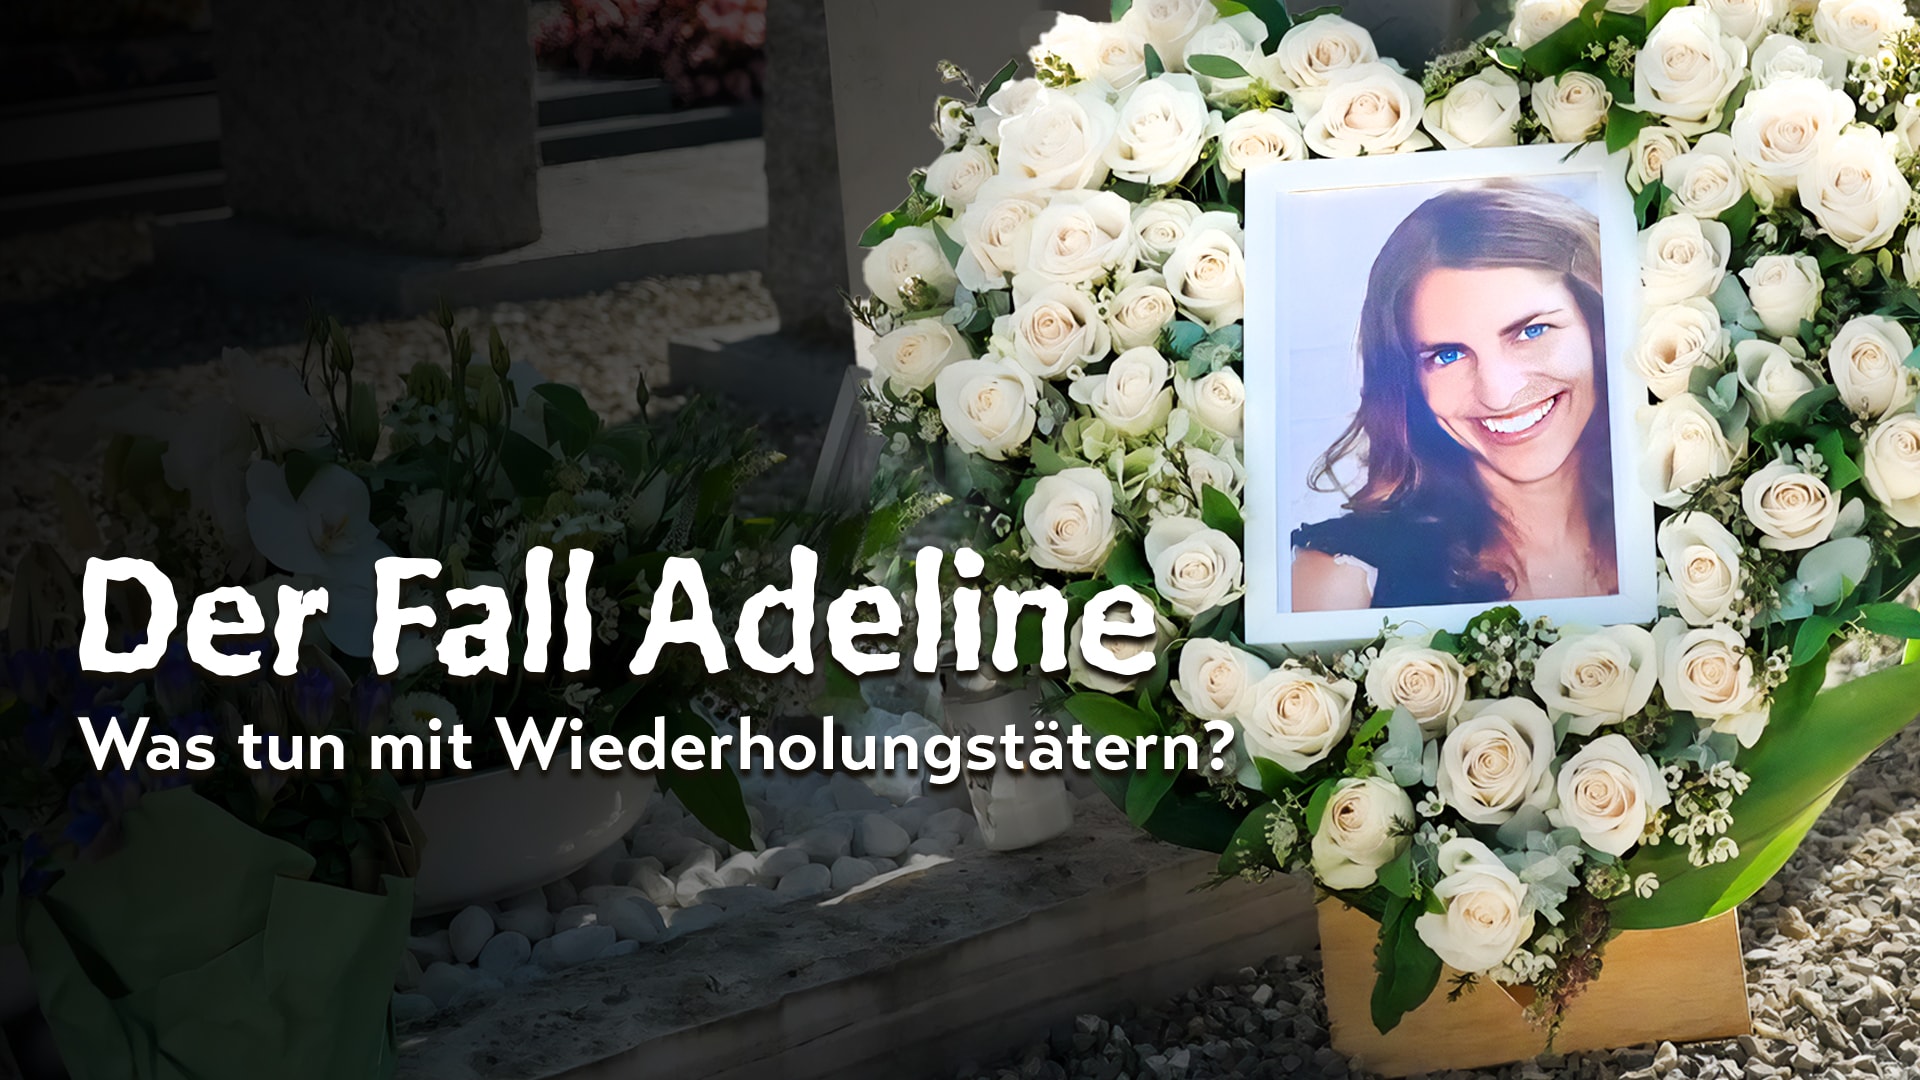 Der Fall Adeline: Was tun mit Wiederholungstätern?